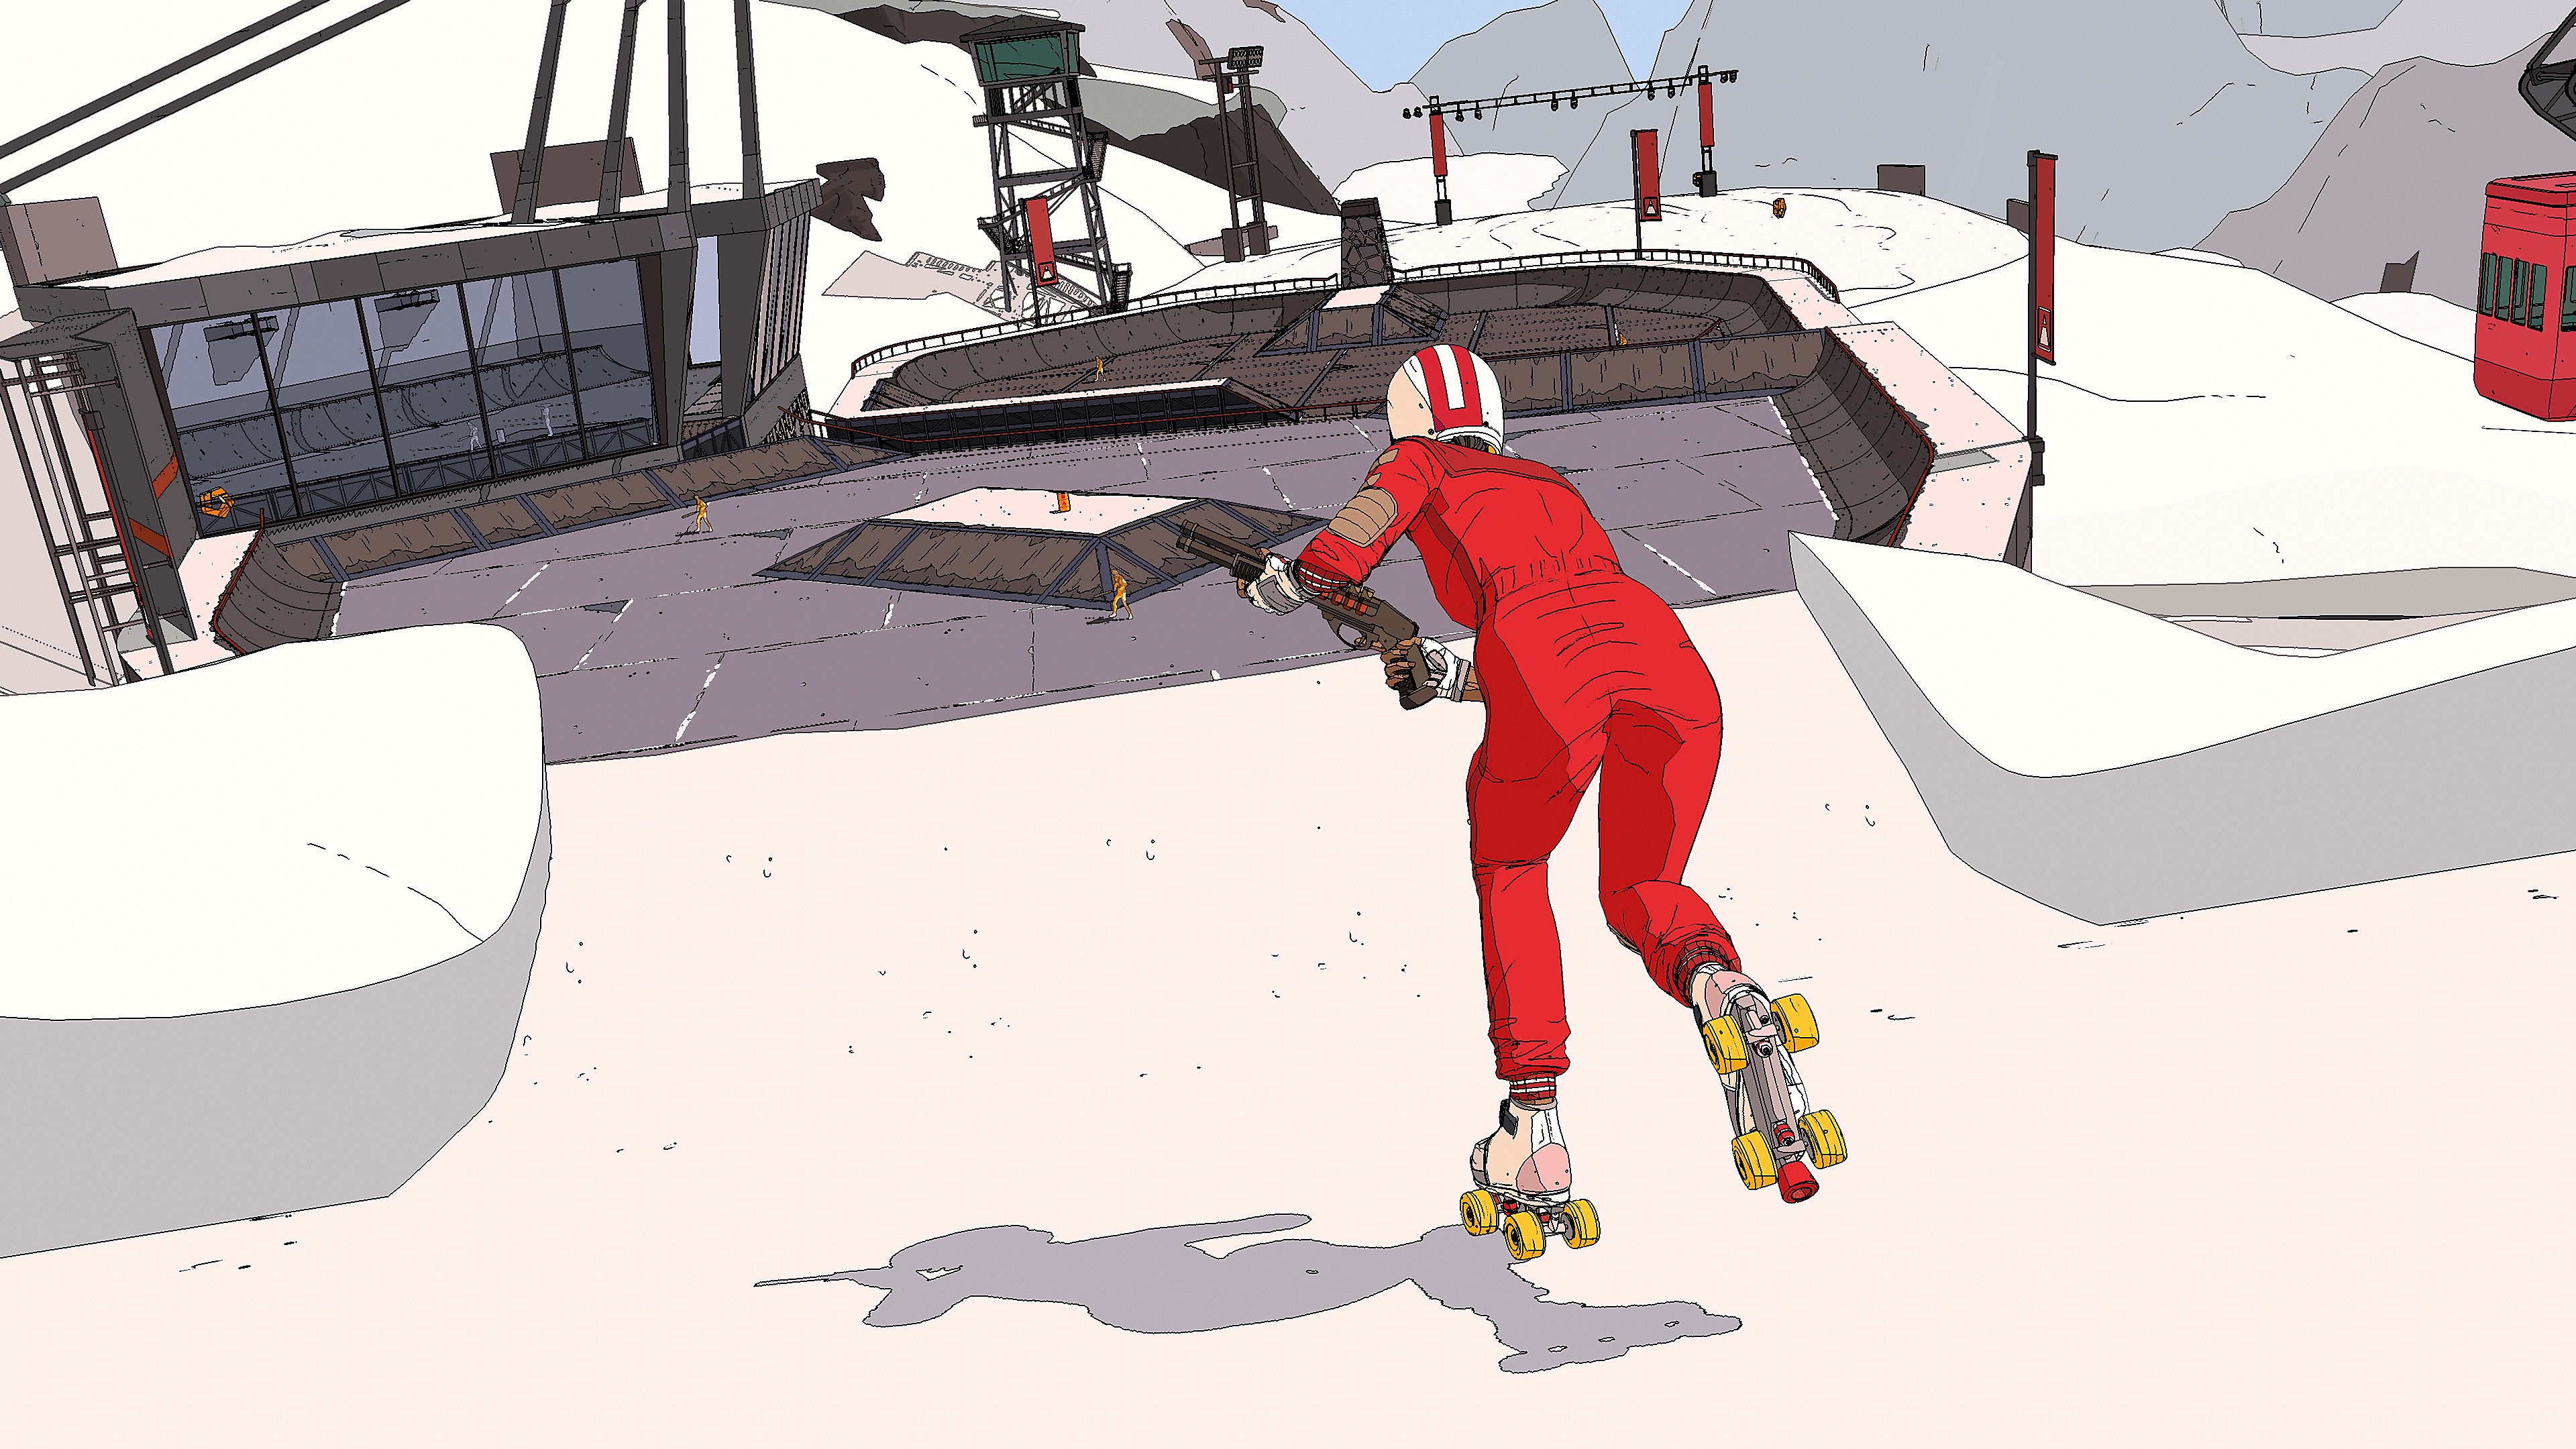 لقطة شاشة للعبة Rollerdrome يظهر فيها أحد المتزلجين يرتدي بزة عمل وخوذة ويتزلج وهو يحمل بندقية